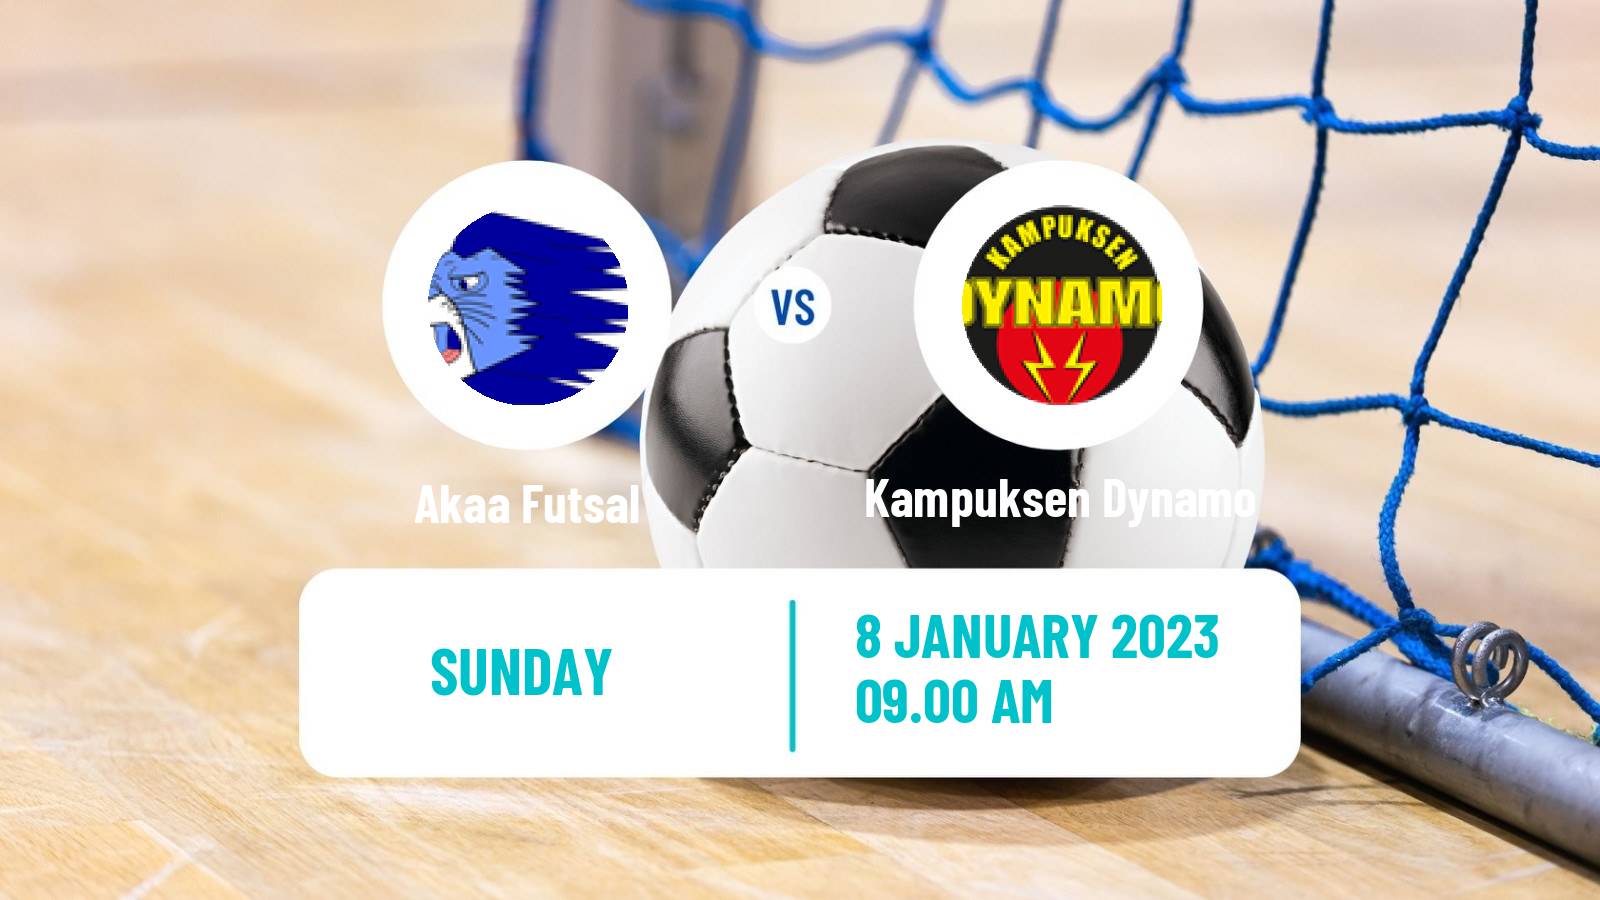 Futsal Finnish Liiga Futsal Akaa - Kampuksen Dynamo